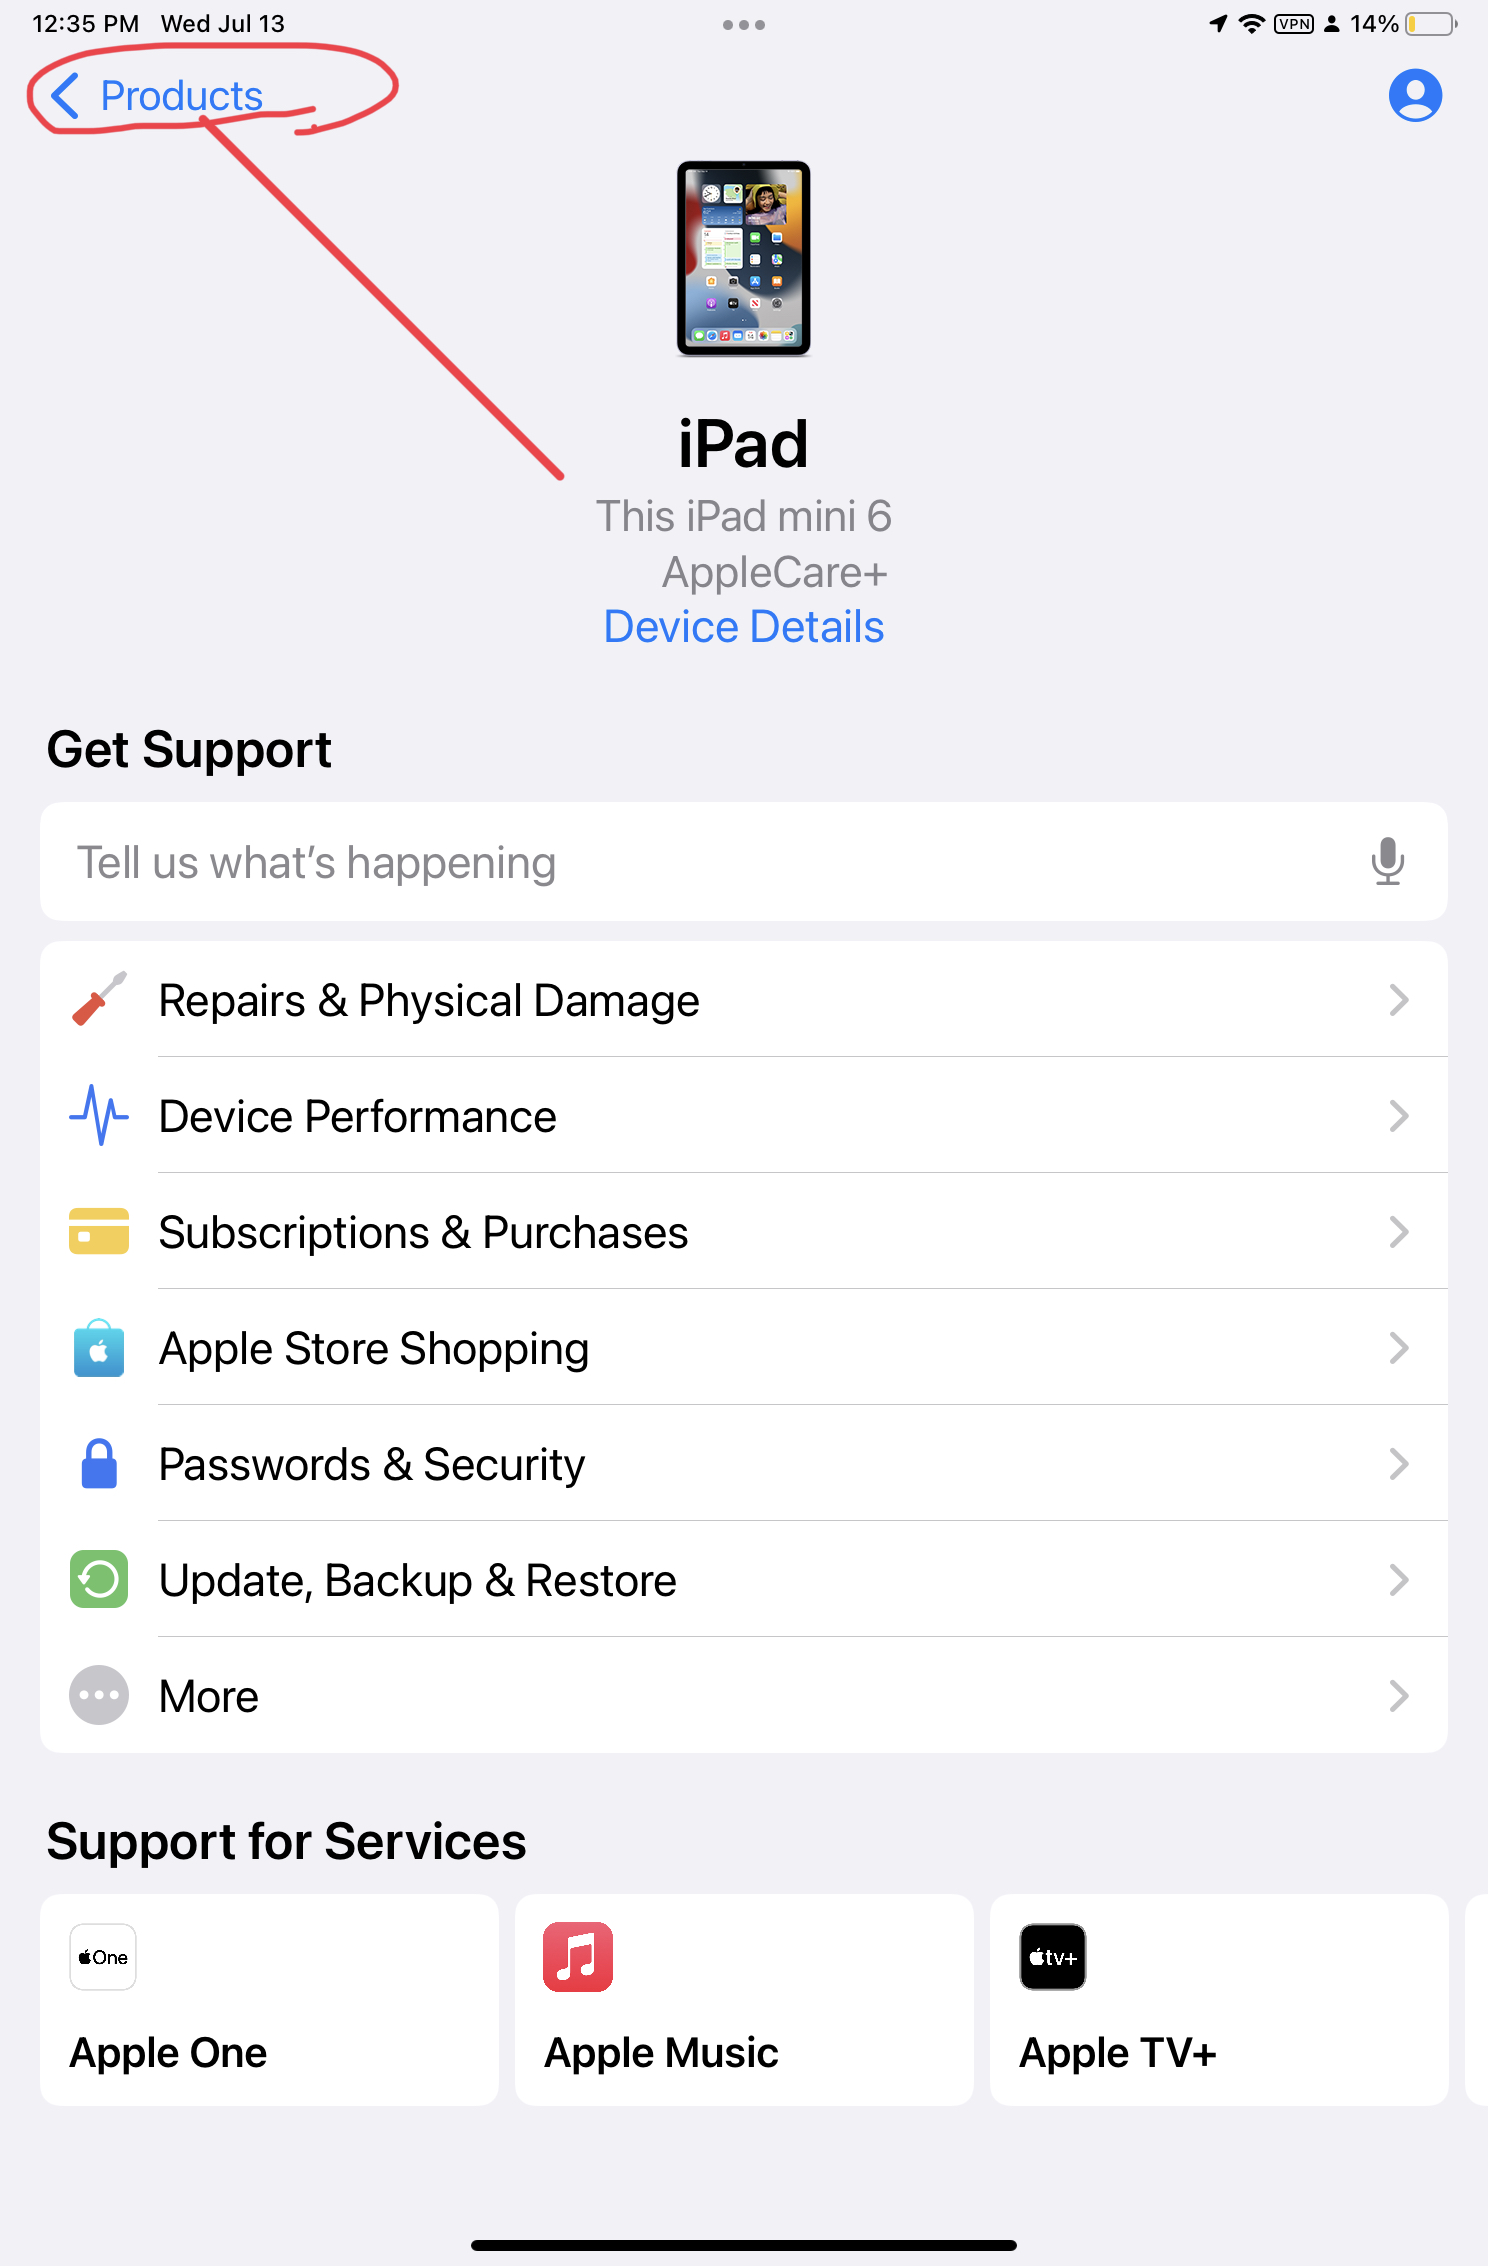 O aplicativo de suporte da Apple com "produtos" circulado em vermelho no canto superior esquerdo